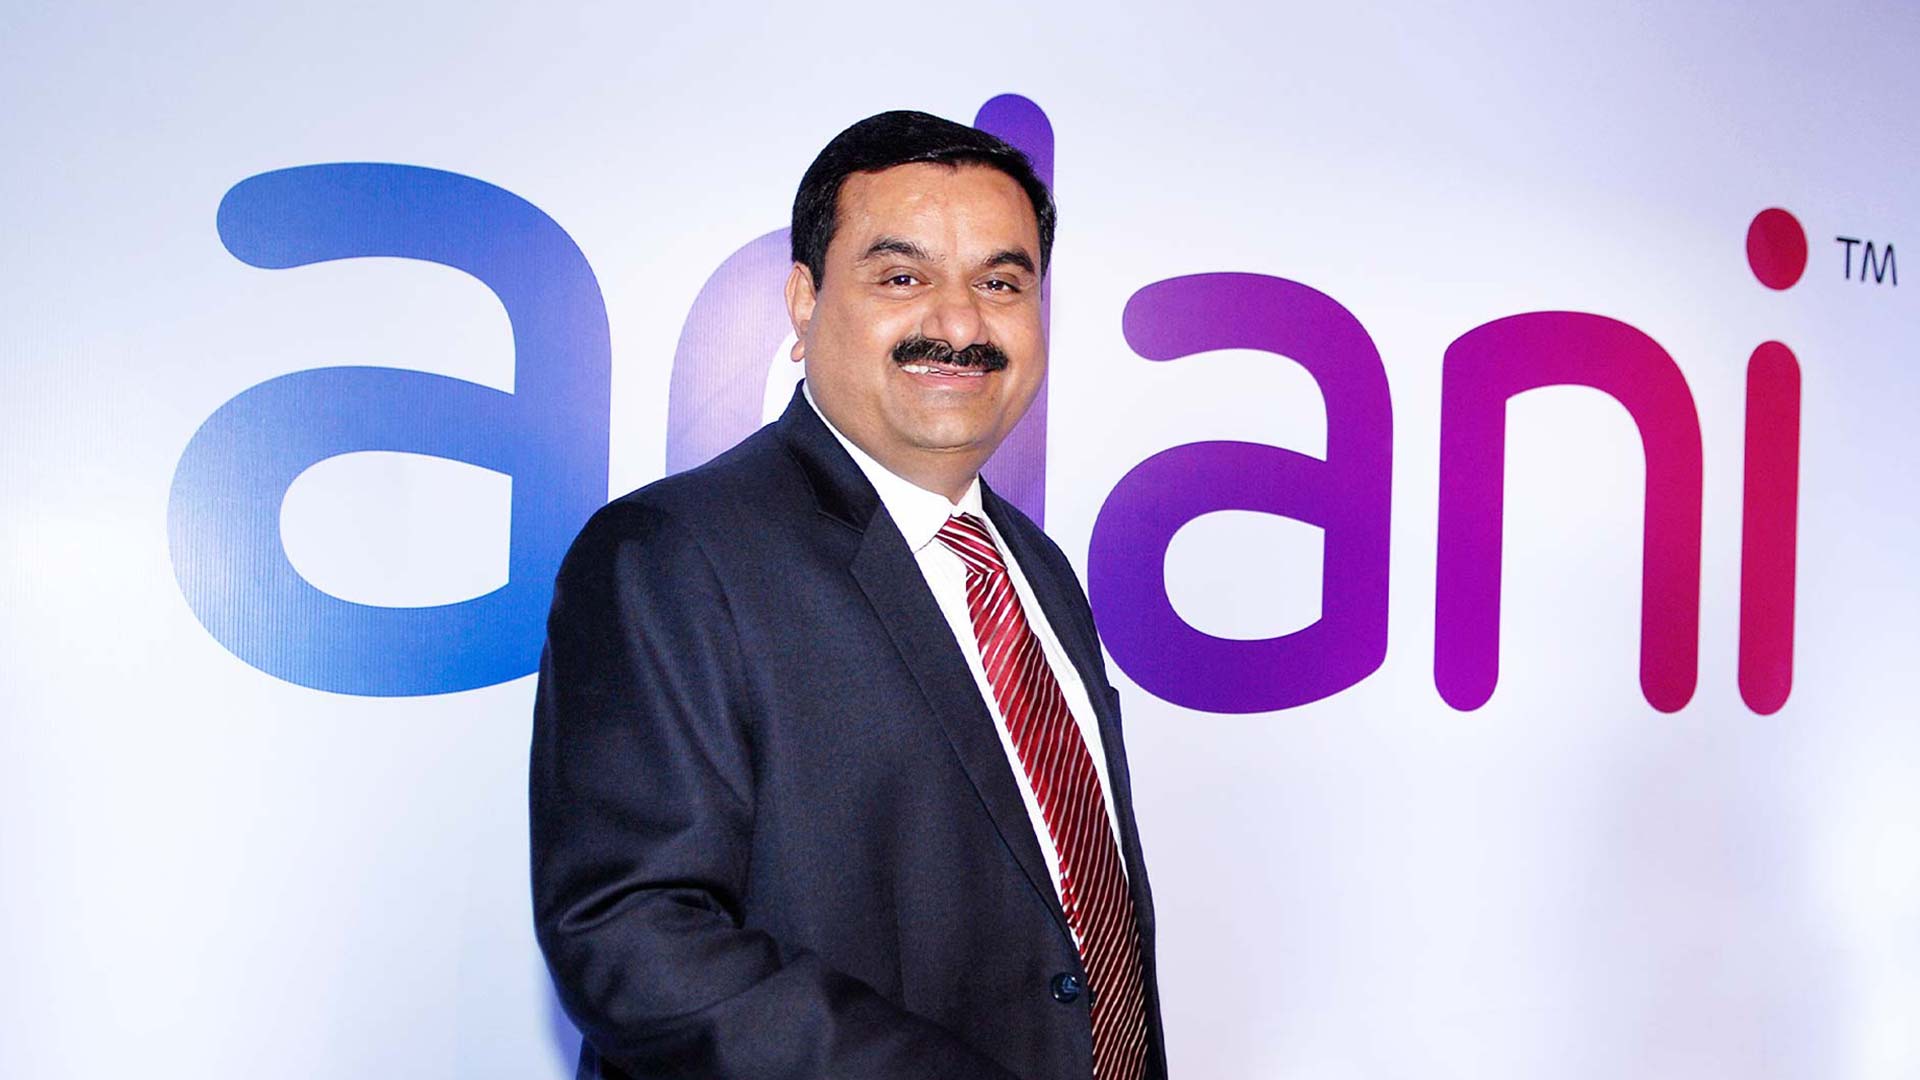 Gautam đã giúp cho Adani Group trở thành công ty vận hành cảng biển tư nhân lớn nhất tại Ấn Độ